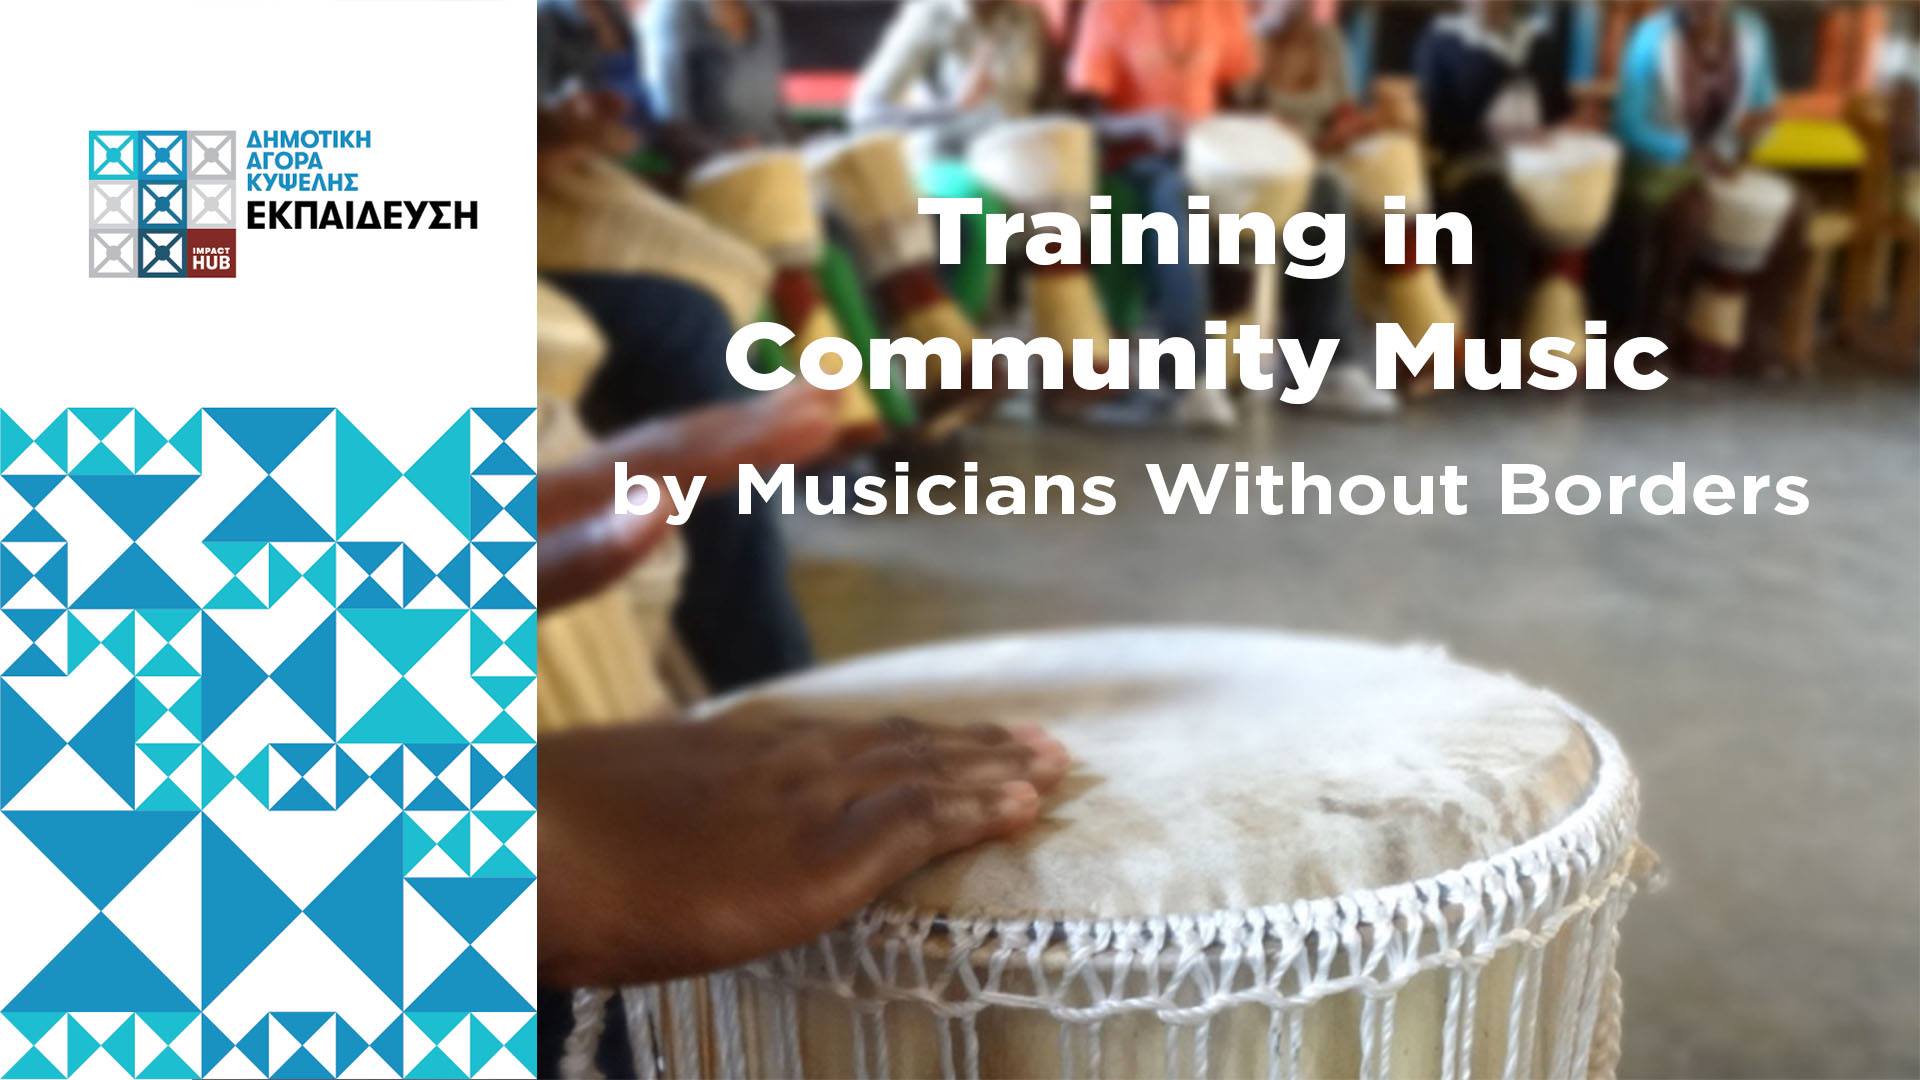 Πρόσκληση συμμετοχής στο εκπαιδευτικό εργαστήριο των Musicians Without Borders.